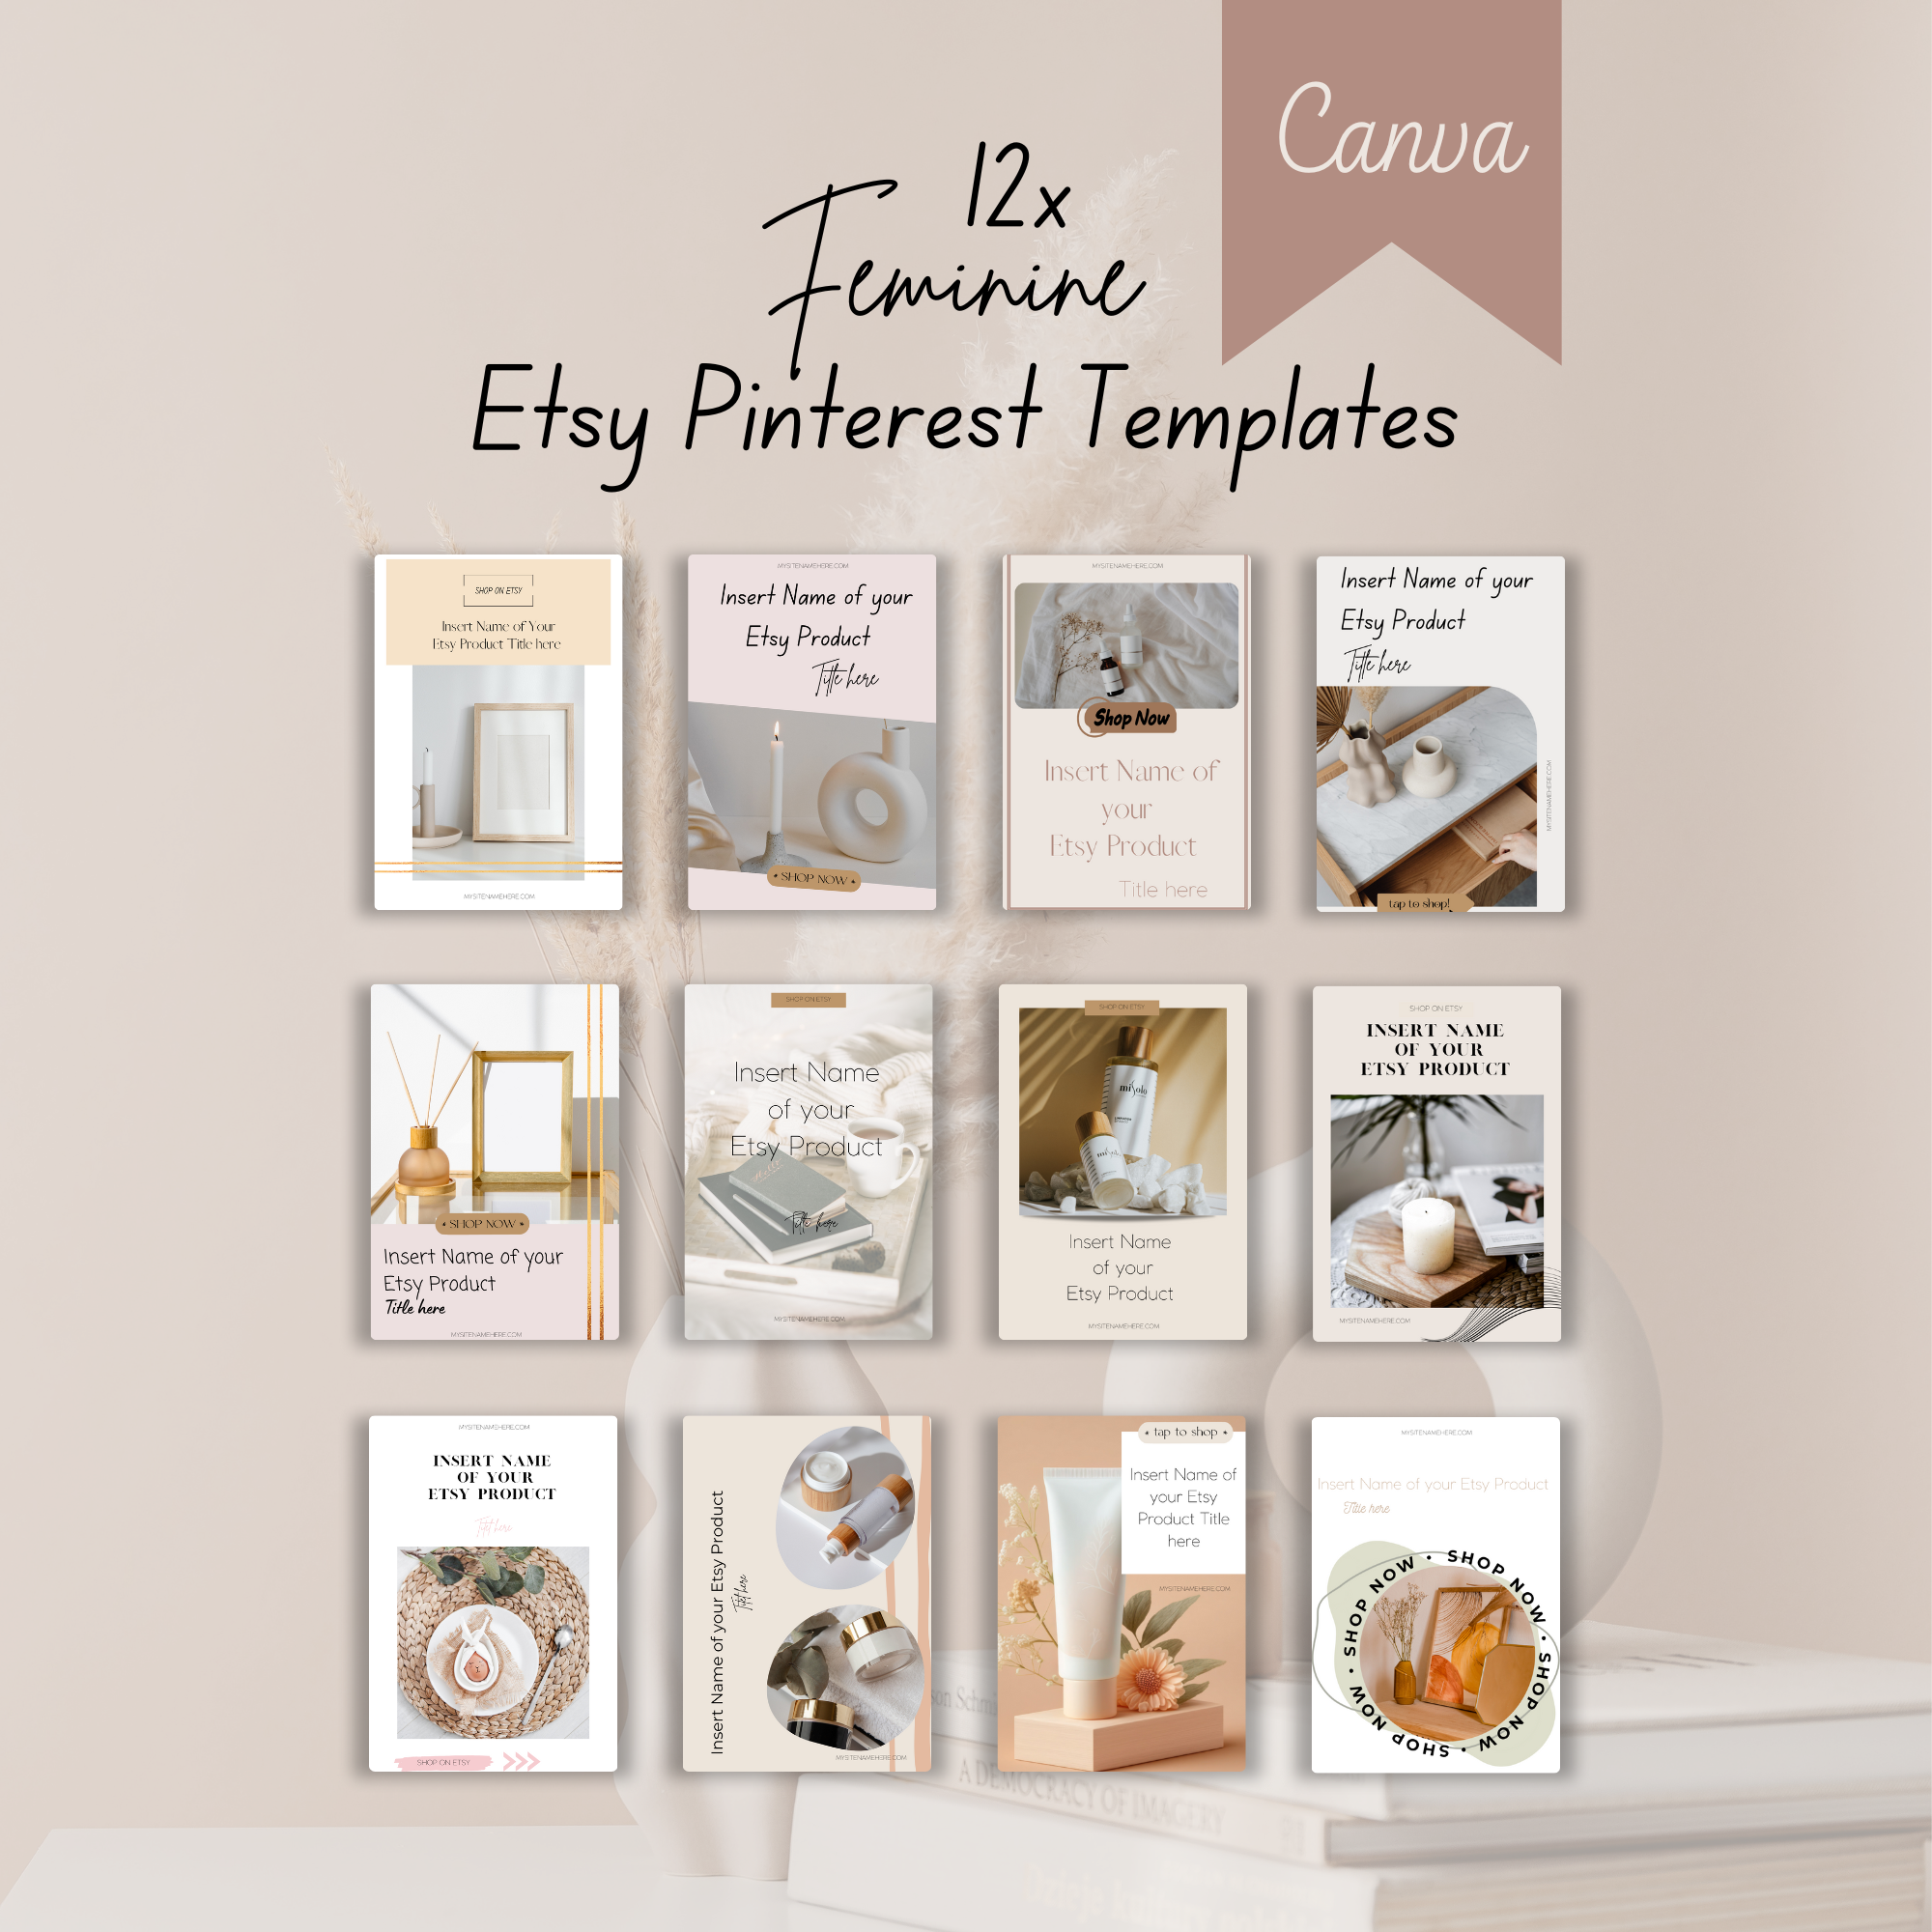 12 Pinterest Templates for Canva | Feminine Brand Pinterest Templates | Fully customizable Pinterest Templates for Canva | Branding